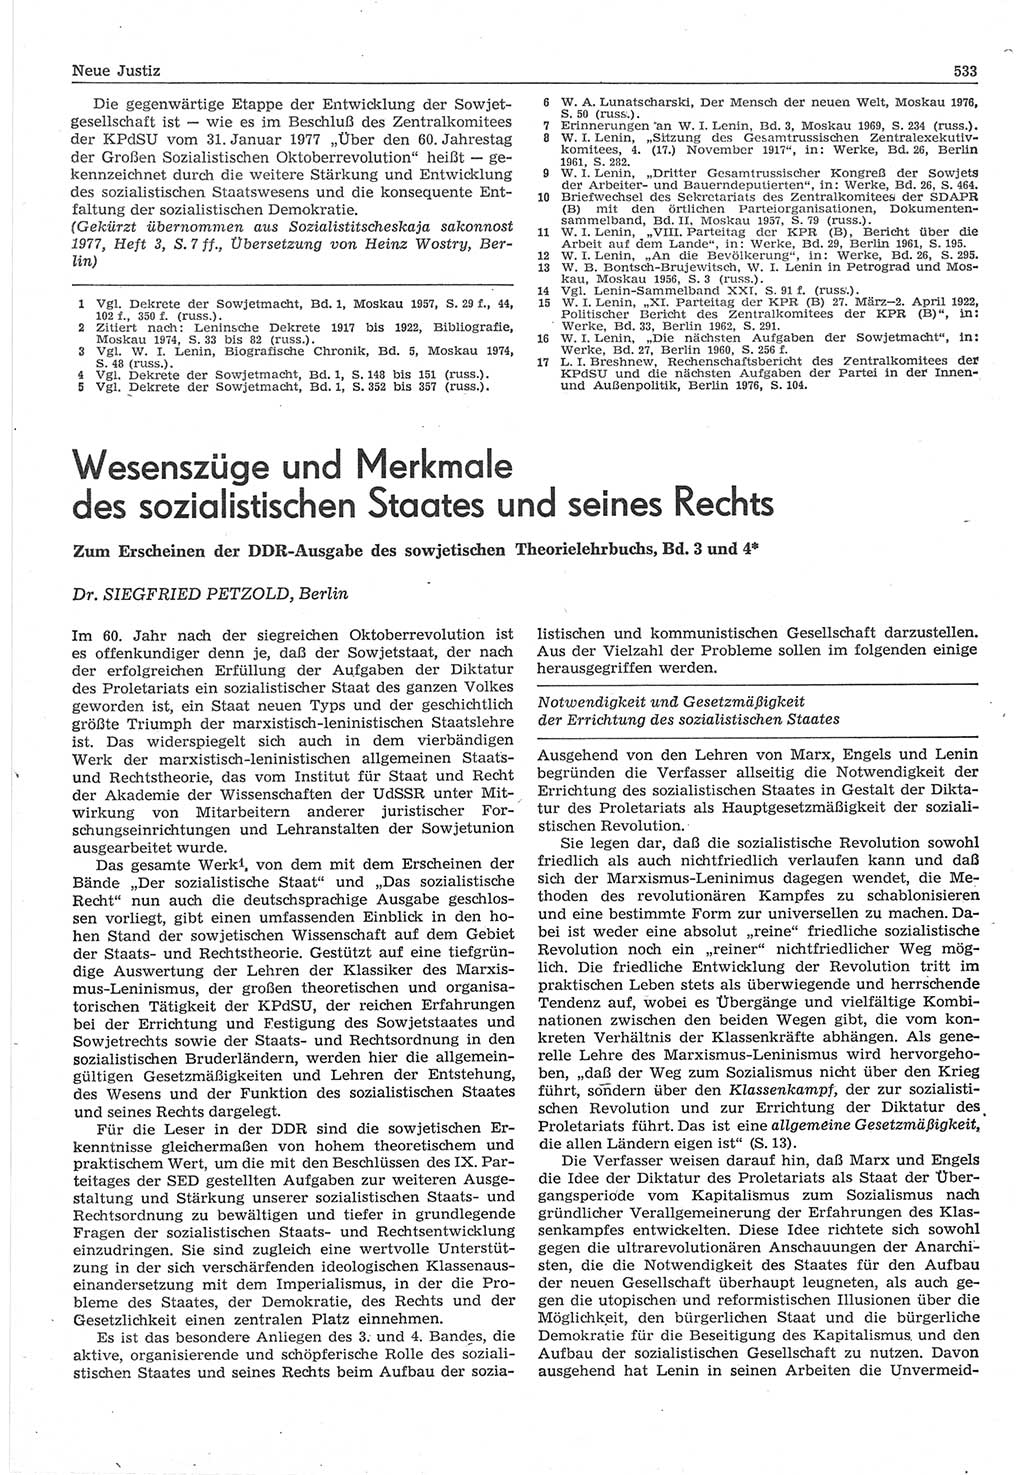 Neue Justiz (NJ), Zeitschrift für Recht und Rechtswissenschaft-Zeitschrift, sozialistisches Recht und Gesetzlichkeit, 31. Jahrgang 1977, Seite 533 (NJ DDR 1977, S. 533)